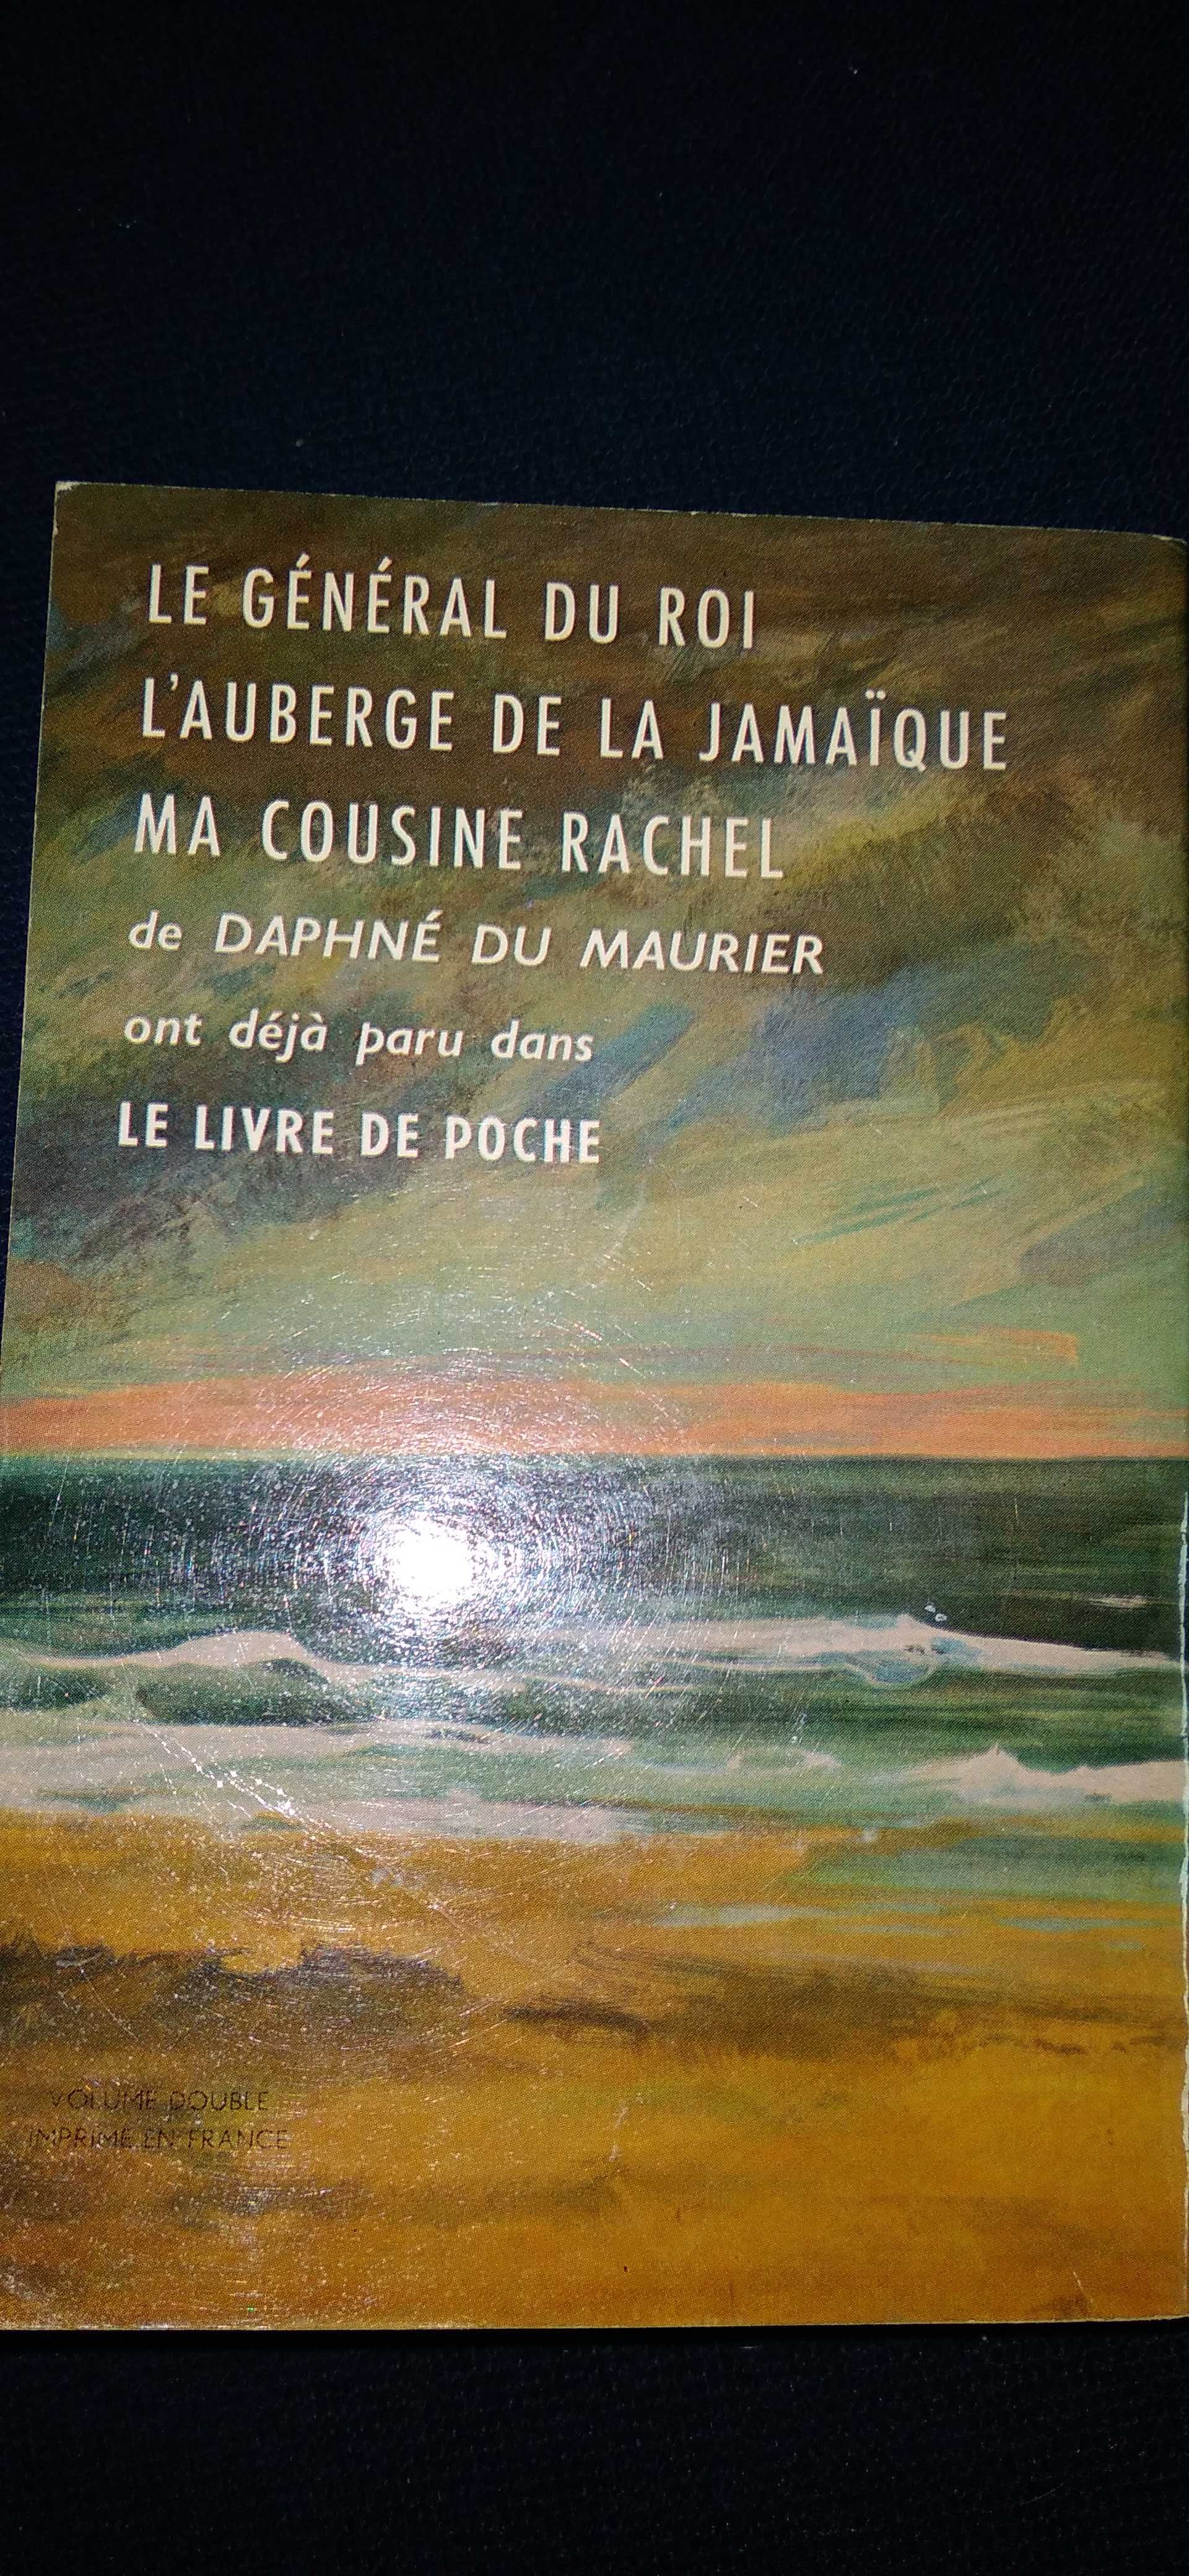 Książka "Rebecca" Daphne du Maurier (w języku francuskim)